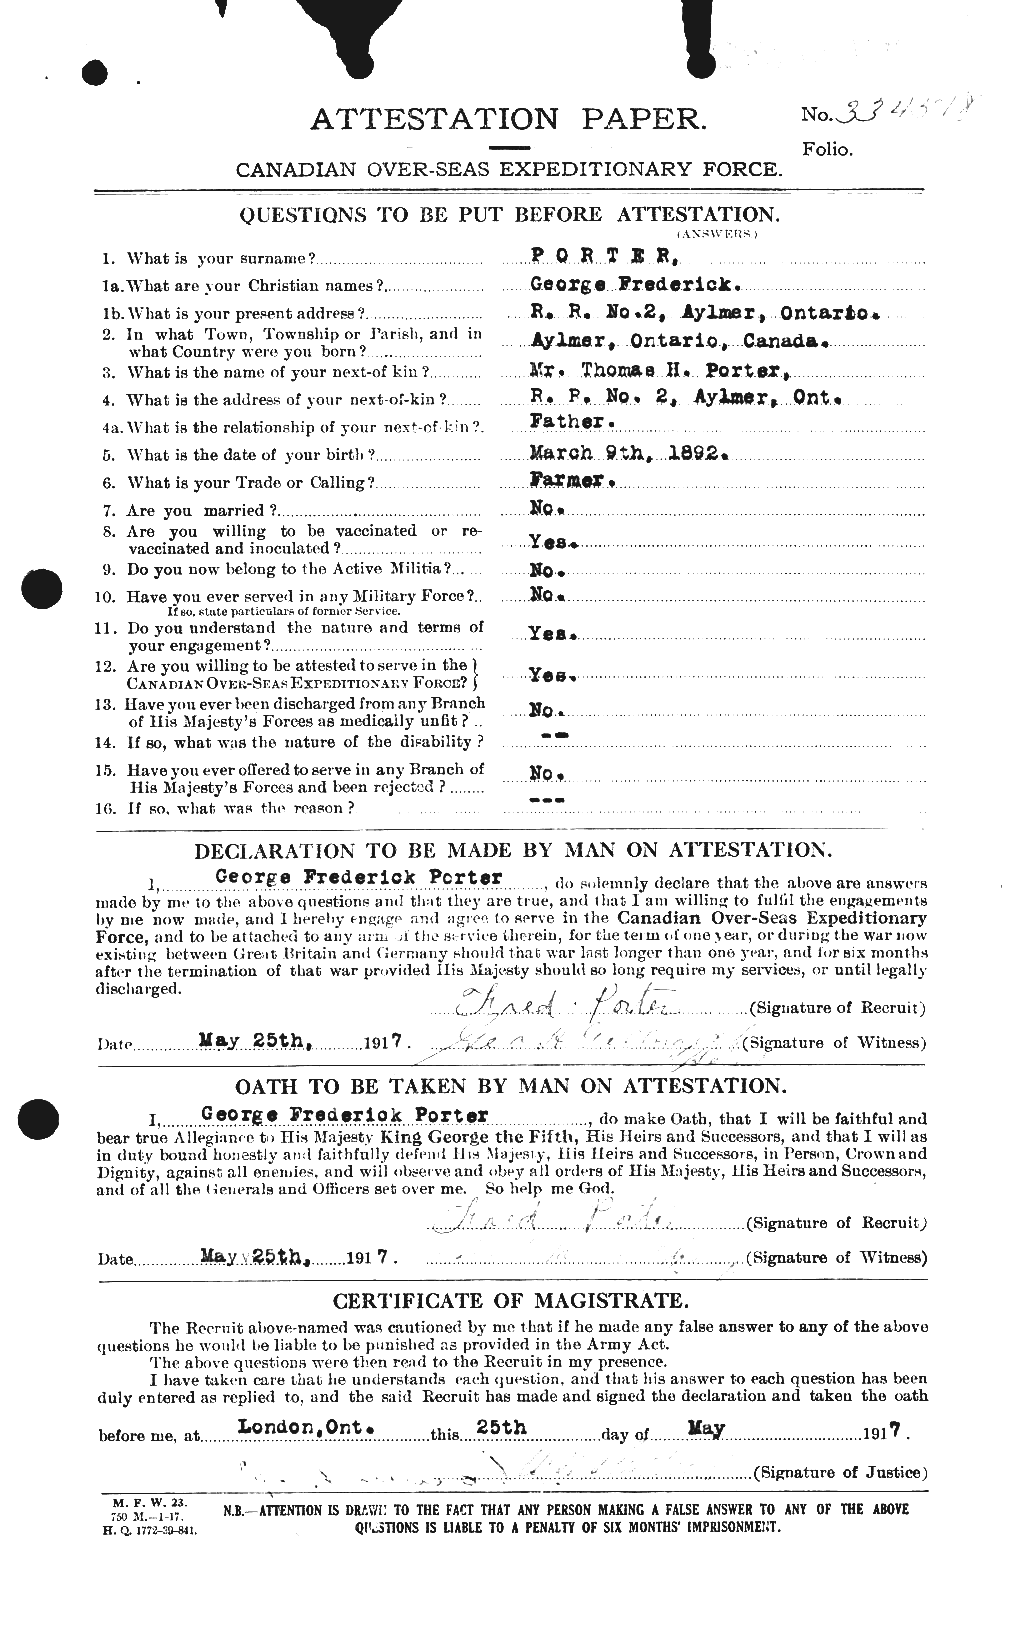 Dossiers du Personnel de la Première Guerre mondiale - CEC 583601a